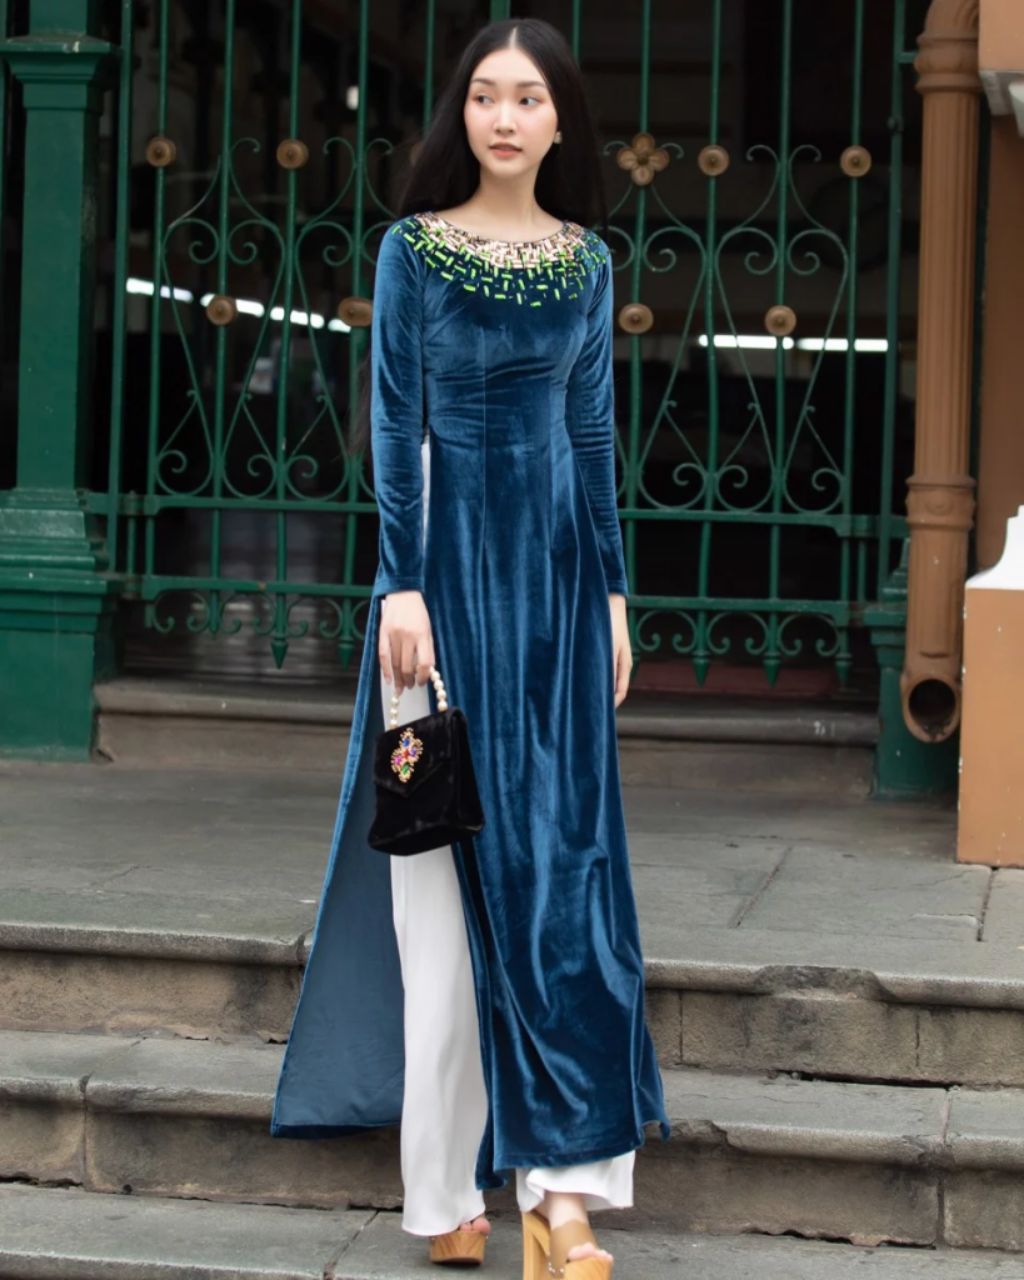 Cùng studio cho thuê áo dài Tết ở Đà Nẵng tìm ra những mẫu áo dài đẹp nhất năm nay 